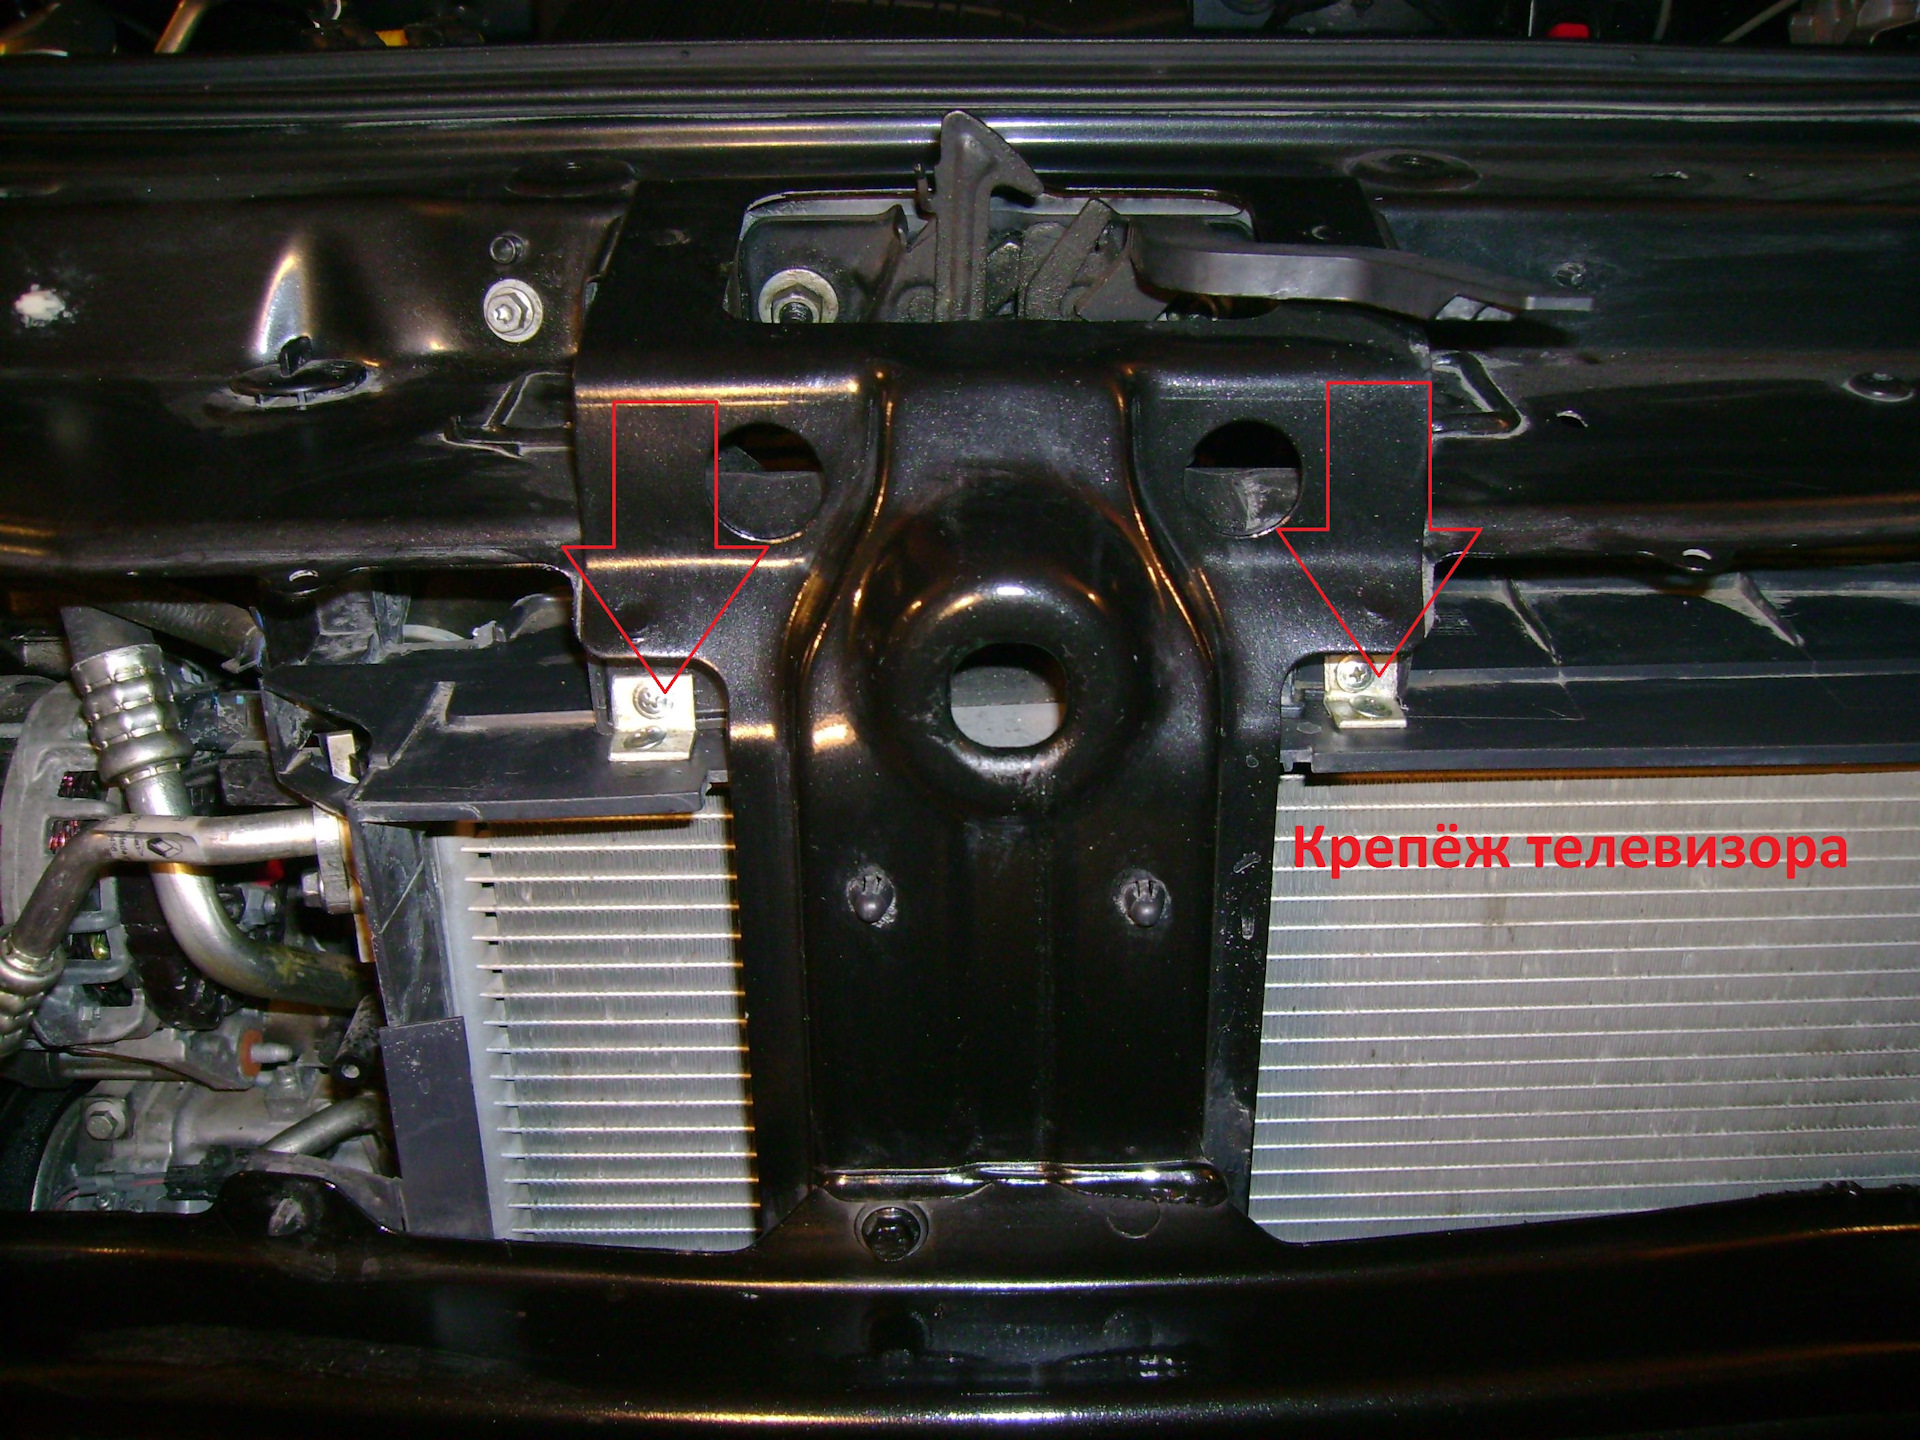 Замена радиатора сандеро. Рено Сандеро степвей радиатор. Renault Sandero 2013г крепление радиатора. Крепление радиатора Рено Сандеро 2. Крепление радиатора Рено Сандеро 1.6.